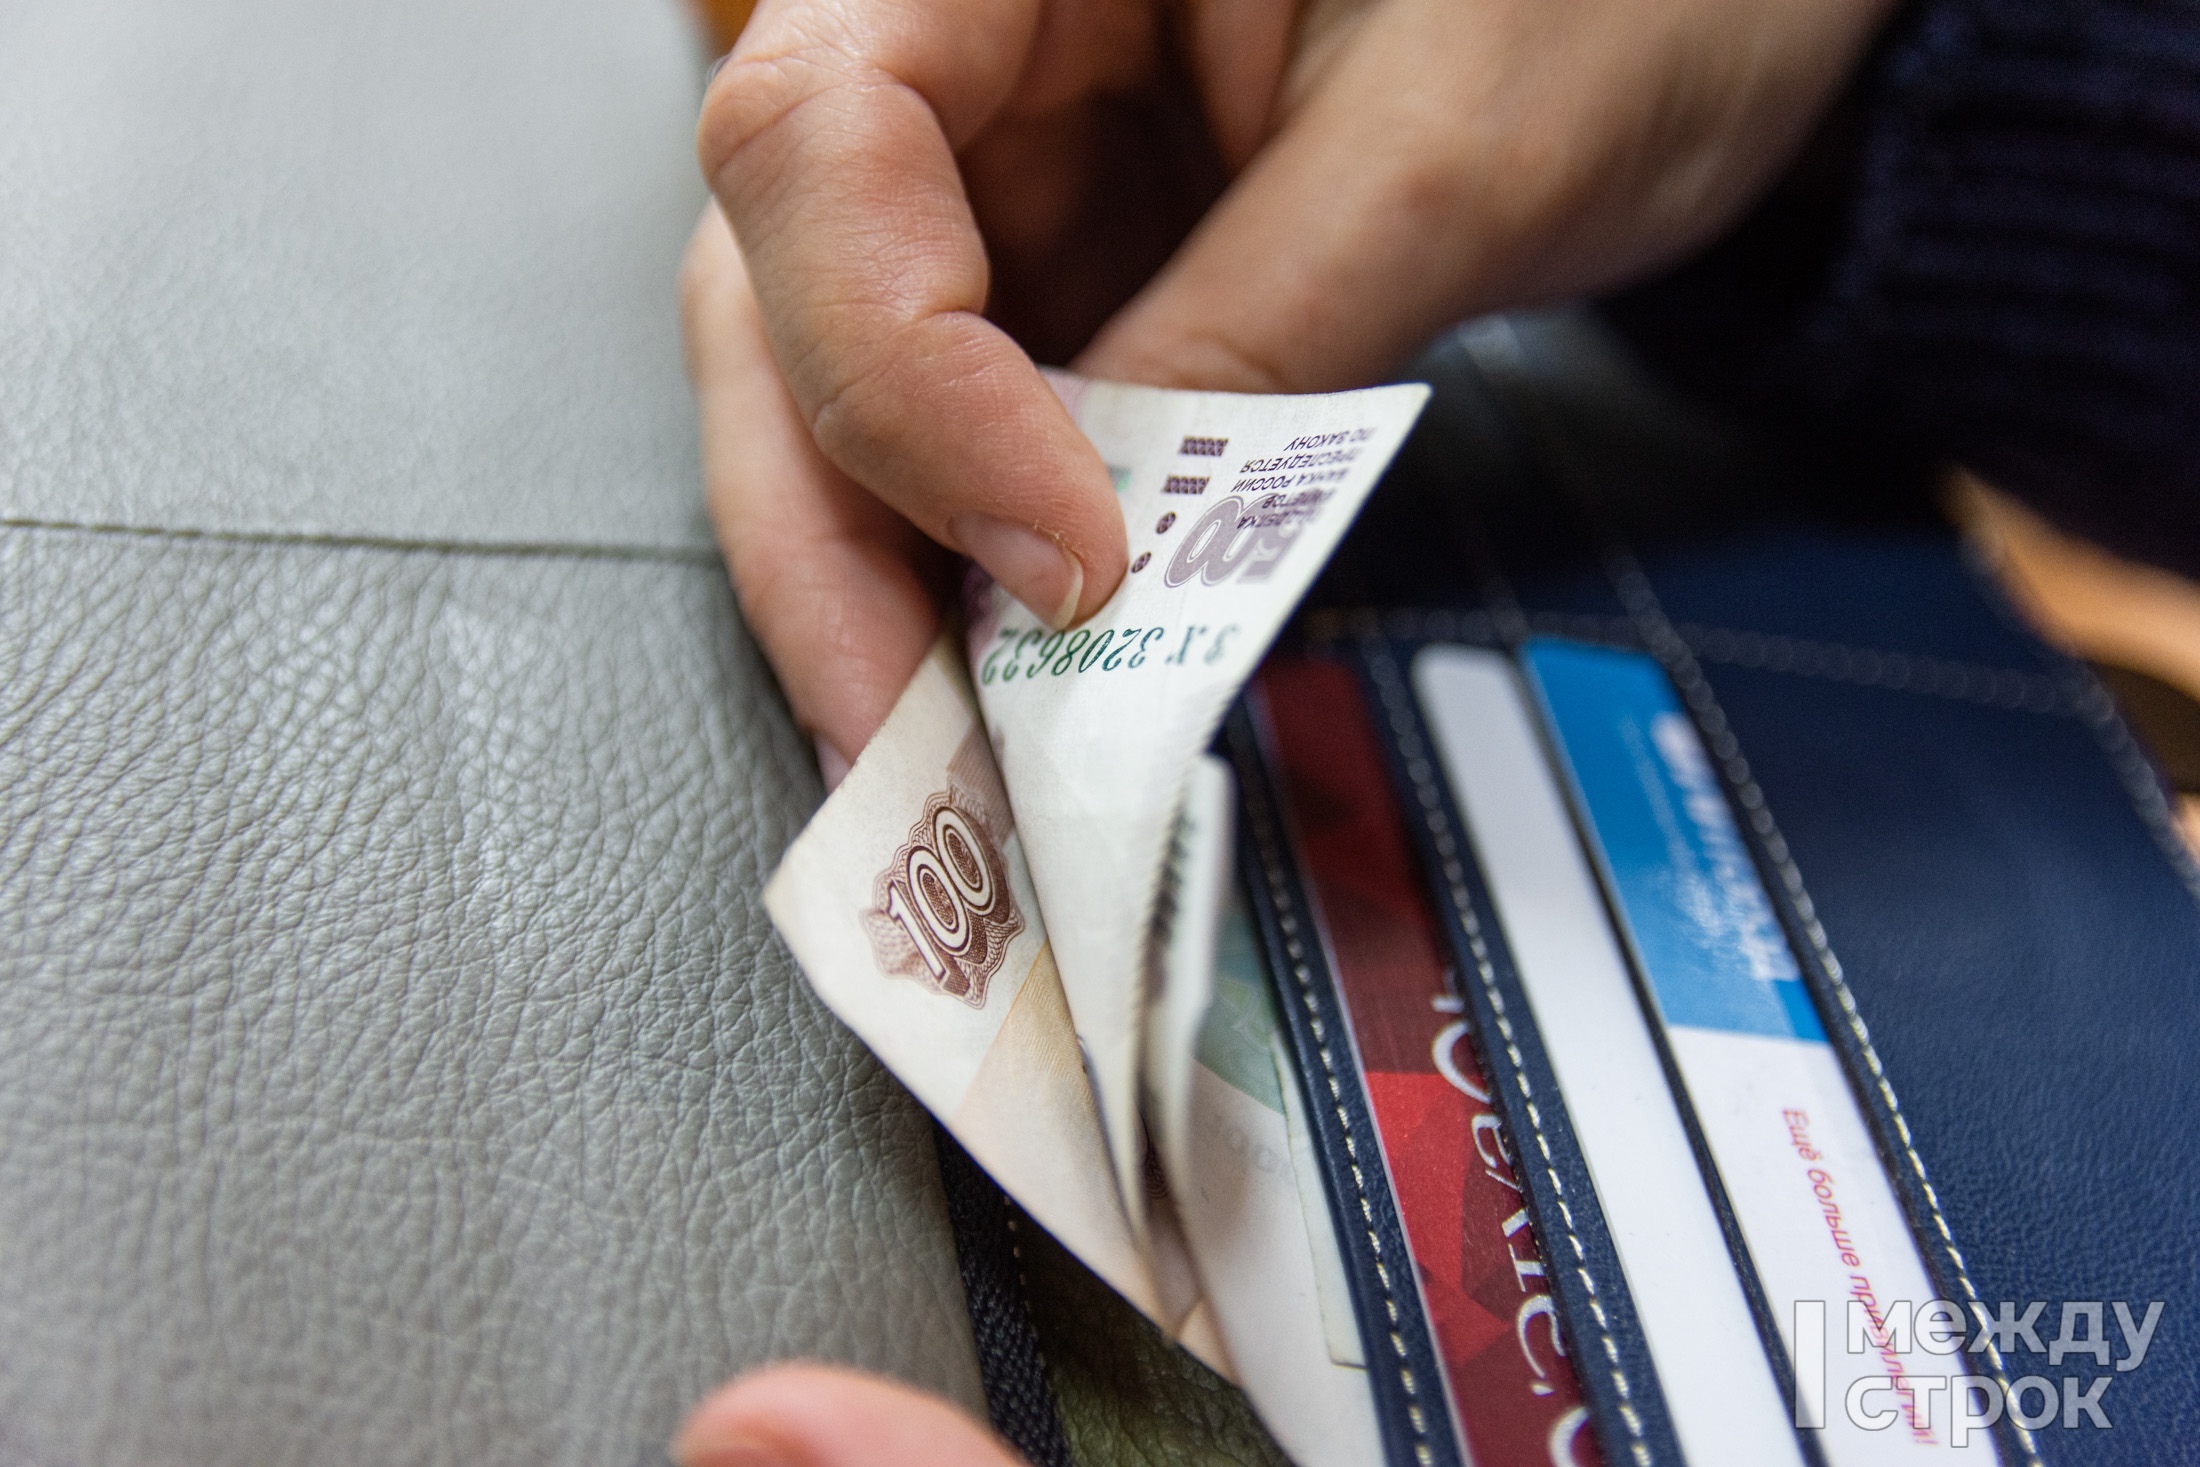 В Нижнем Тагиле женщина нашла чужую банковскую карту, потратила с неё 800 рублей, а штраф получила 40 000 рублей 